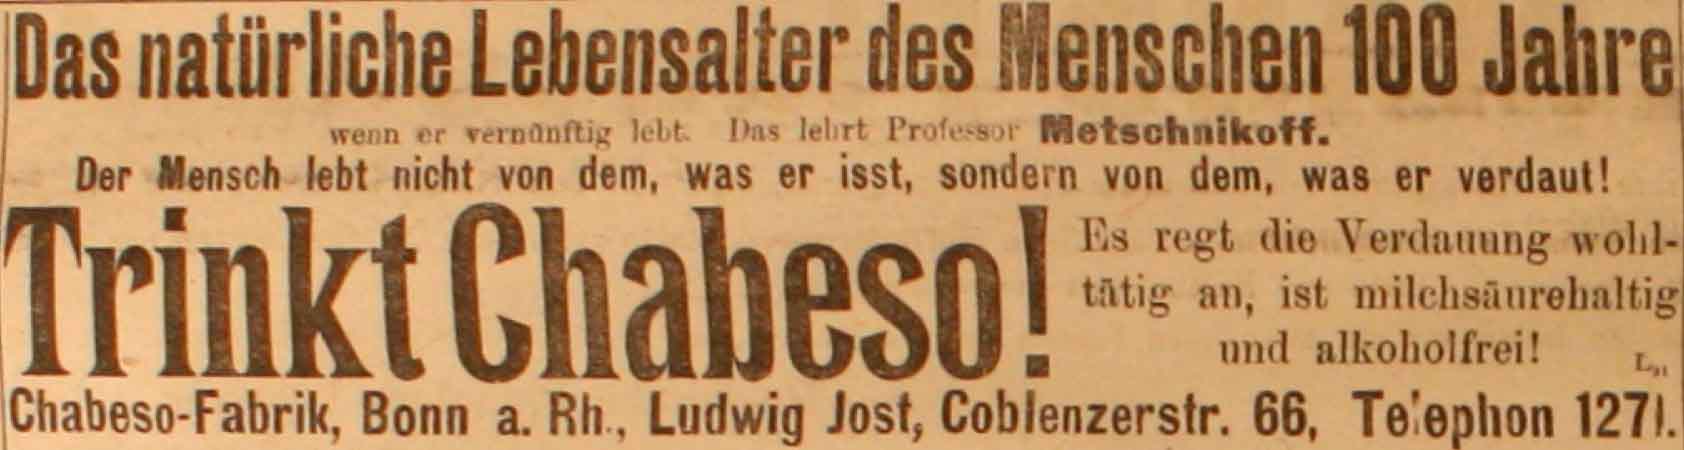 Anzeige in der Deutschen Reichs-Zeitung vom 16. Mai 1915